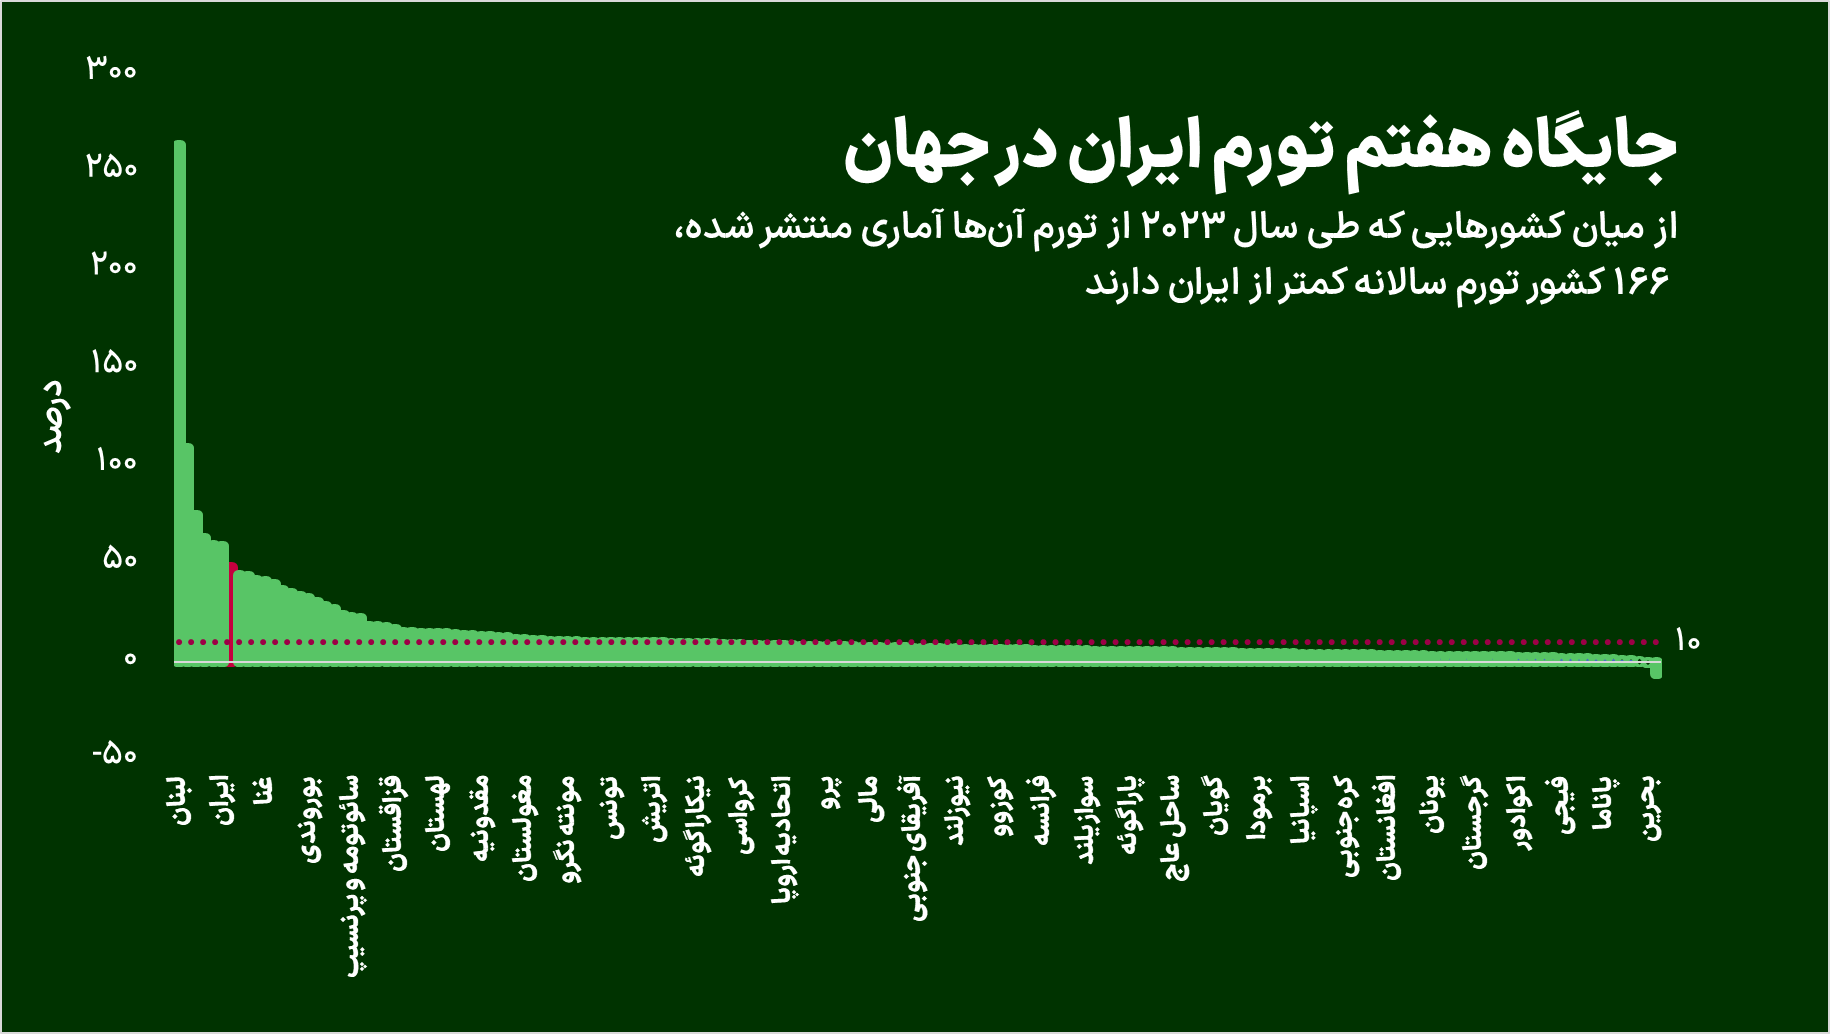 اختلاف تورم ایران با کشورهای دیگر چقدر است؟